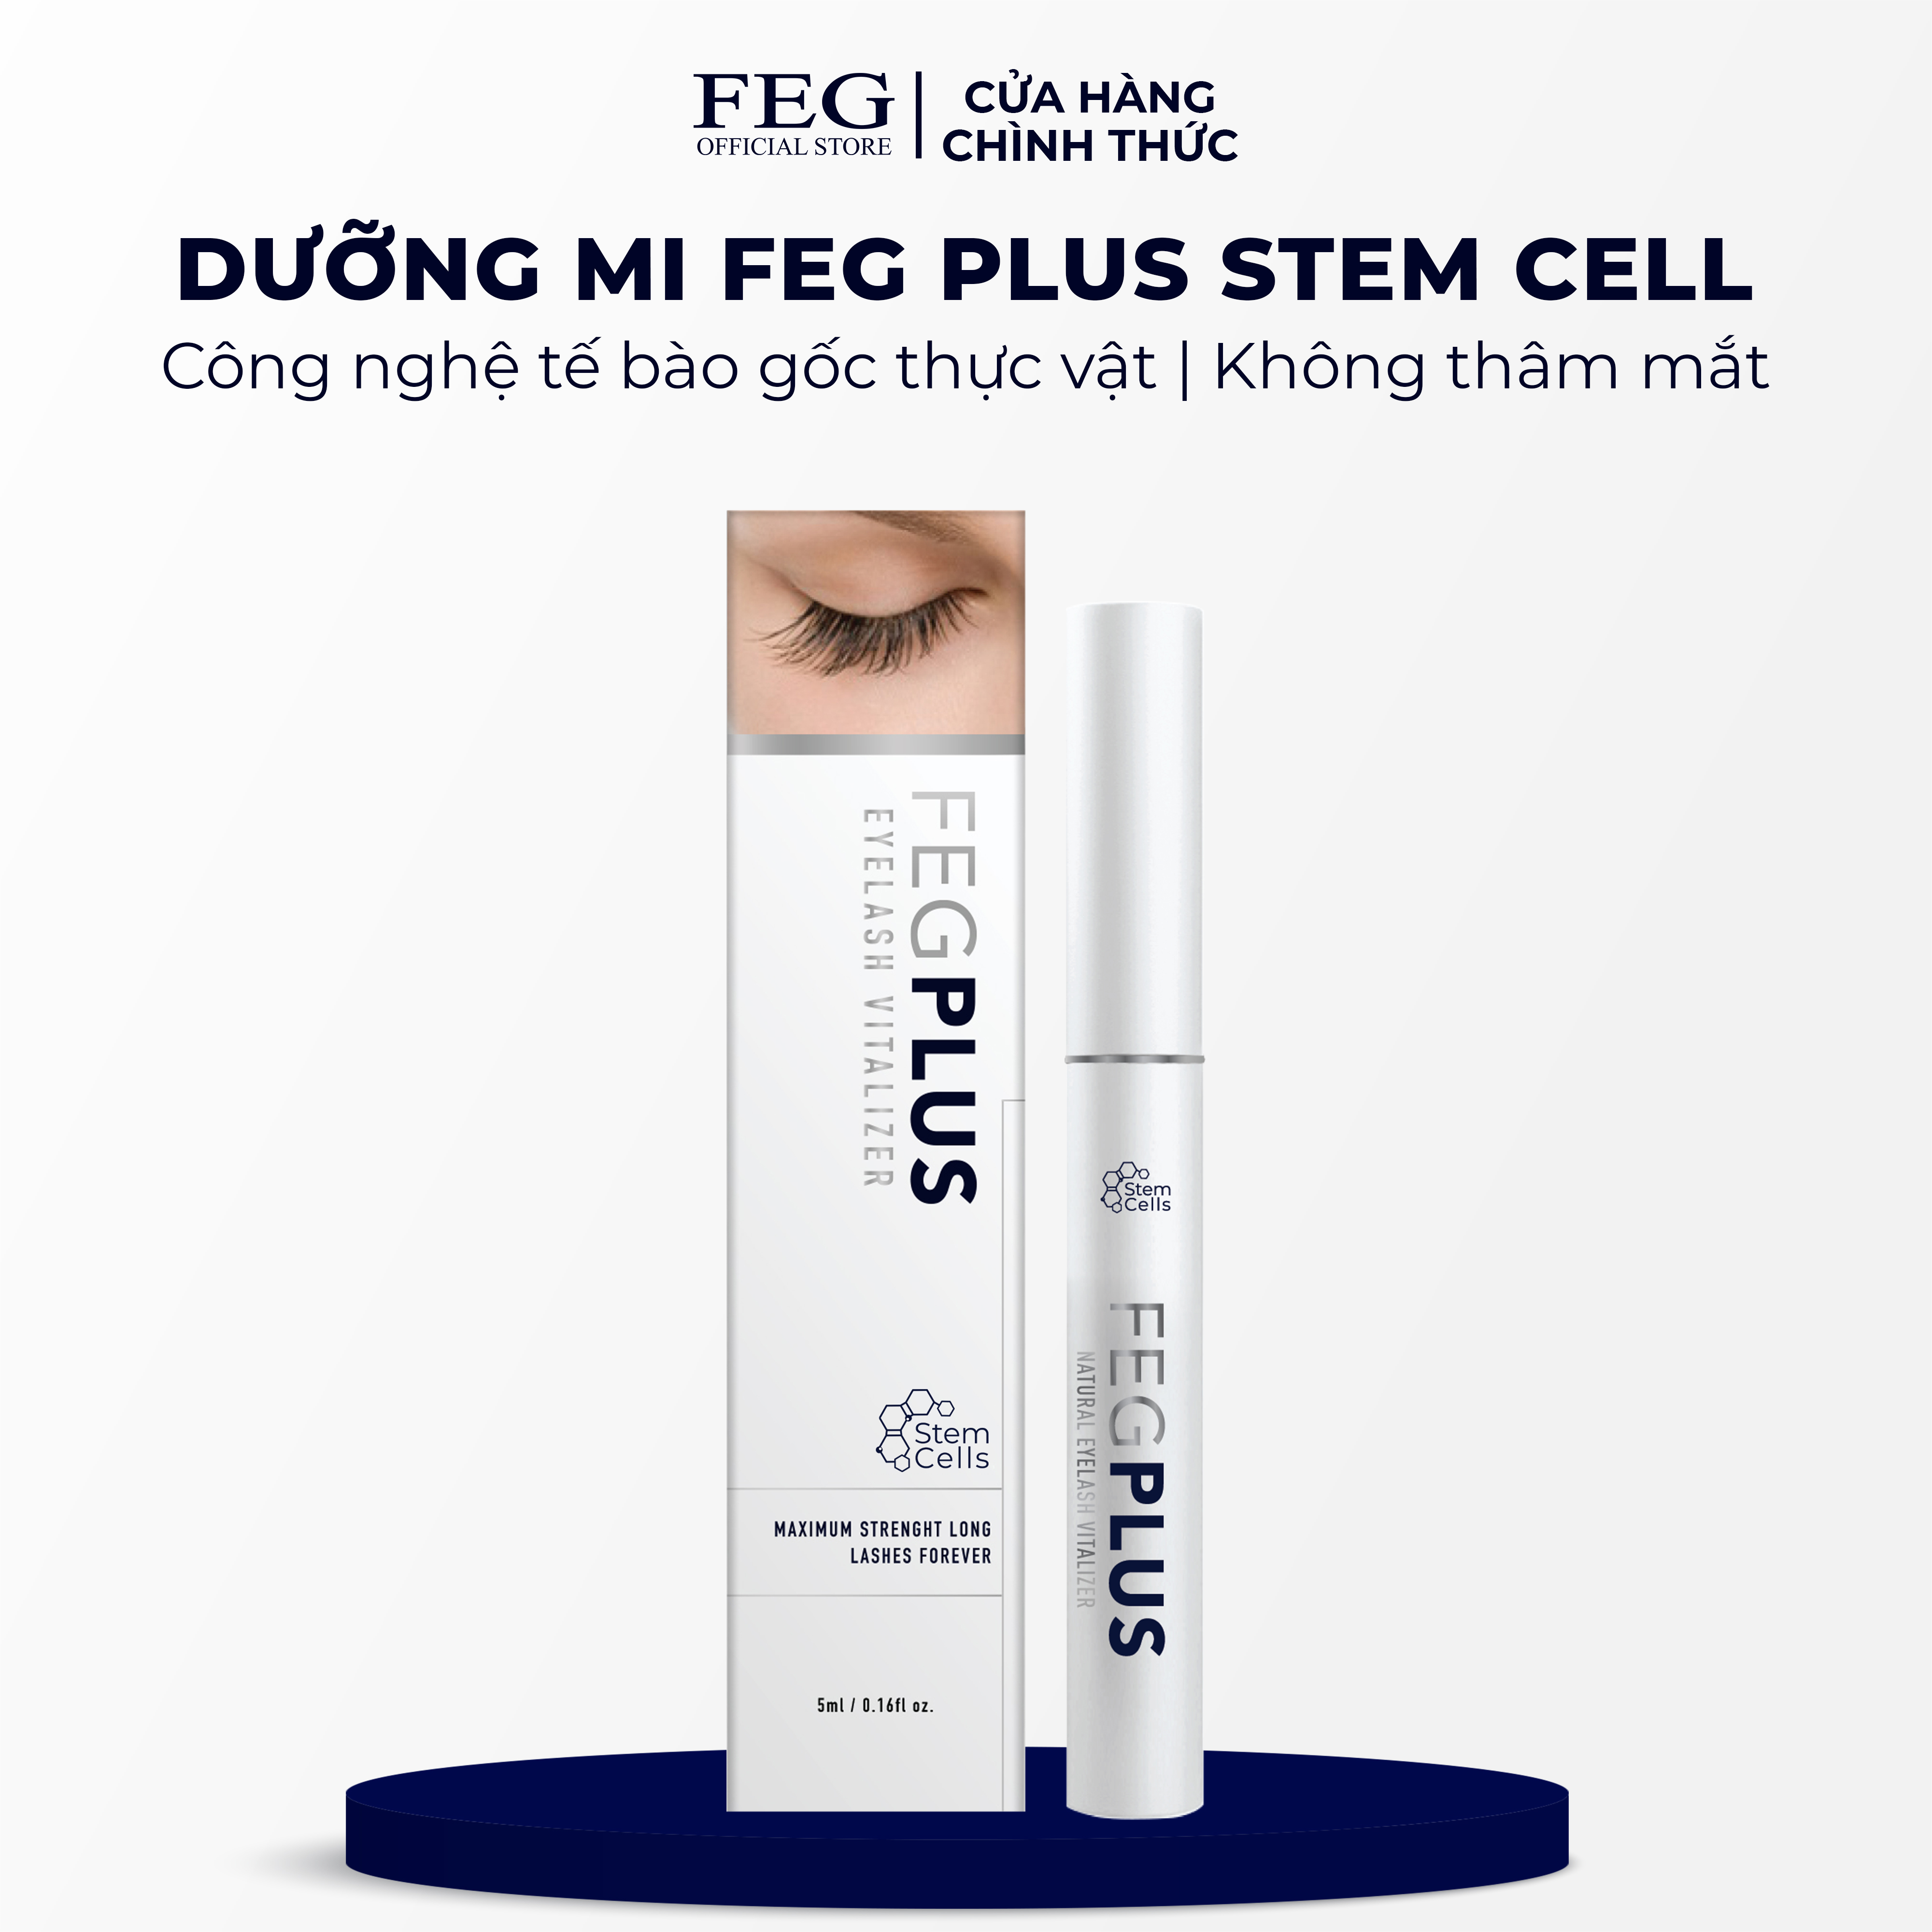 Dưỡng mi tế bào gốc FEG Plus Stem Cells ban ngày - Dài mi sau 14 ngày, không chứa Prostaglandins gây thâm mắt (5ml)